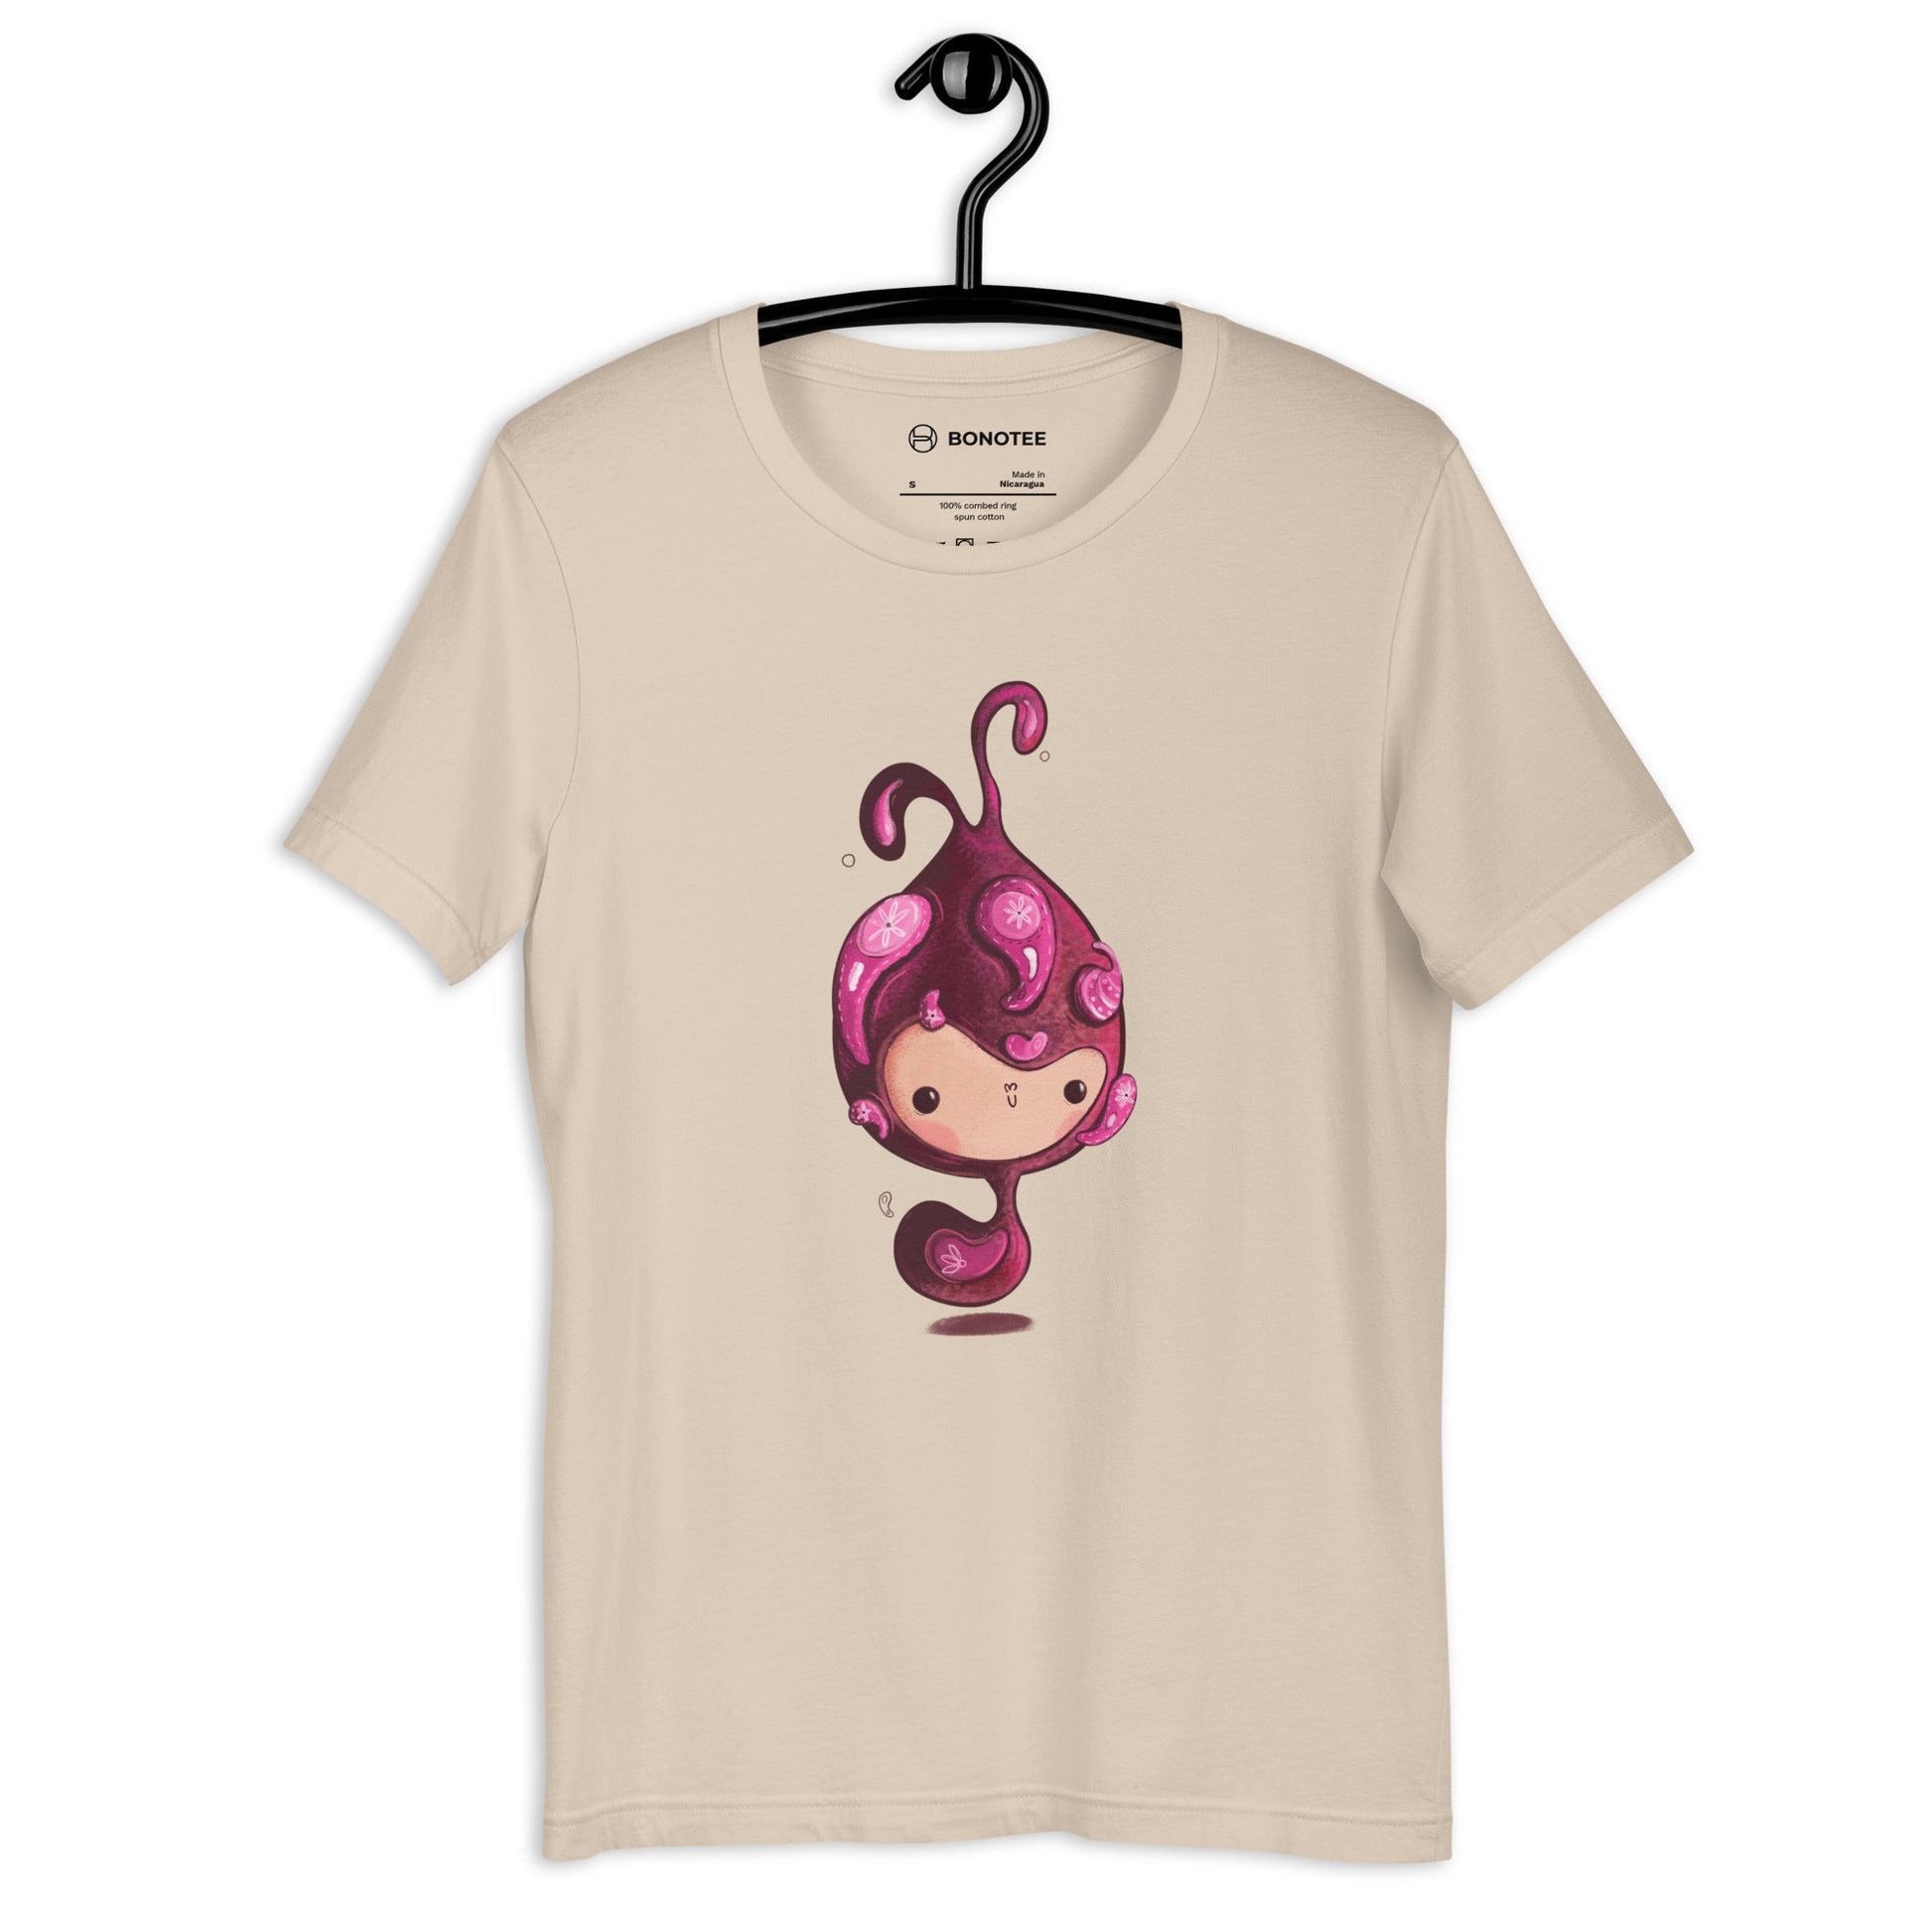 THE LITTLE SNAIL Women's T-Shirt - Bonotee